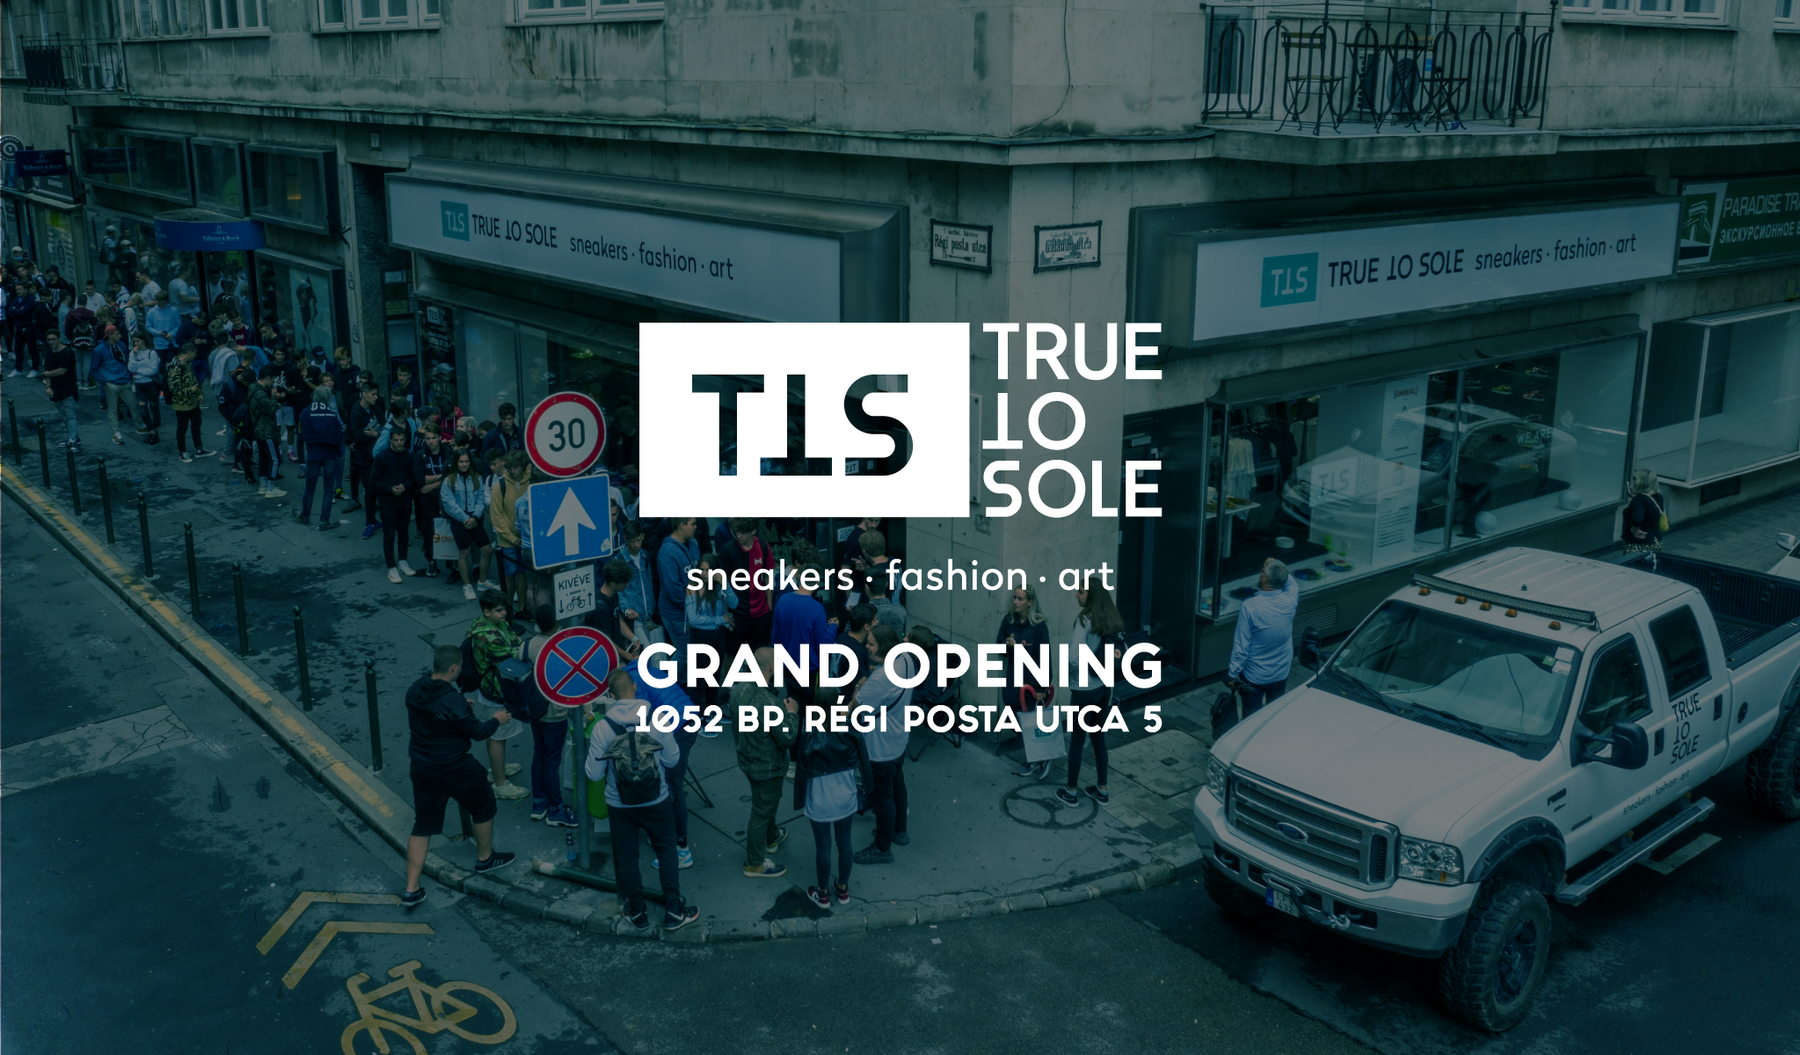 Megnyitottuk az új True to Sole üzletet - köszi, hogy jöttetek!